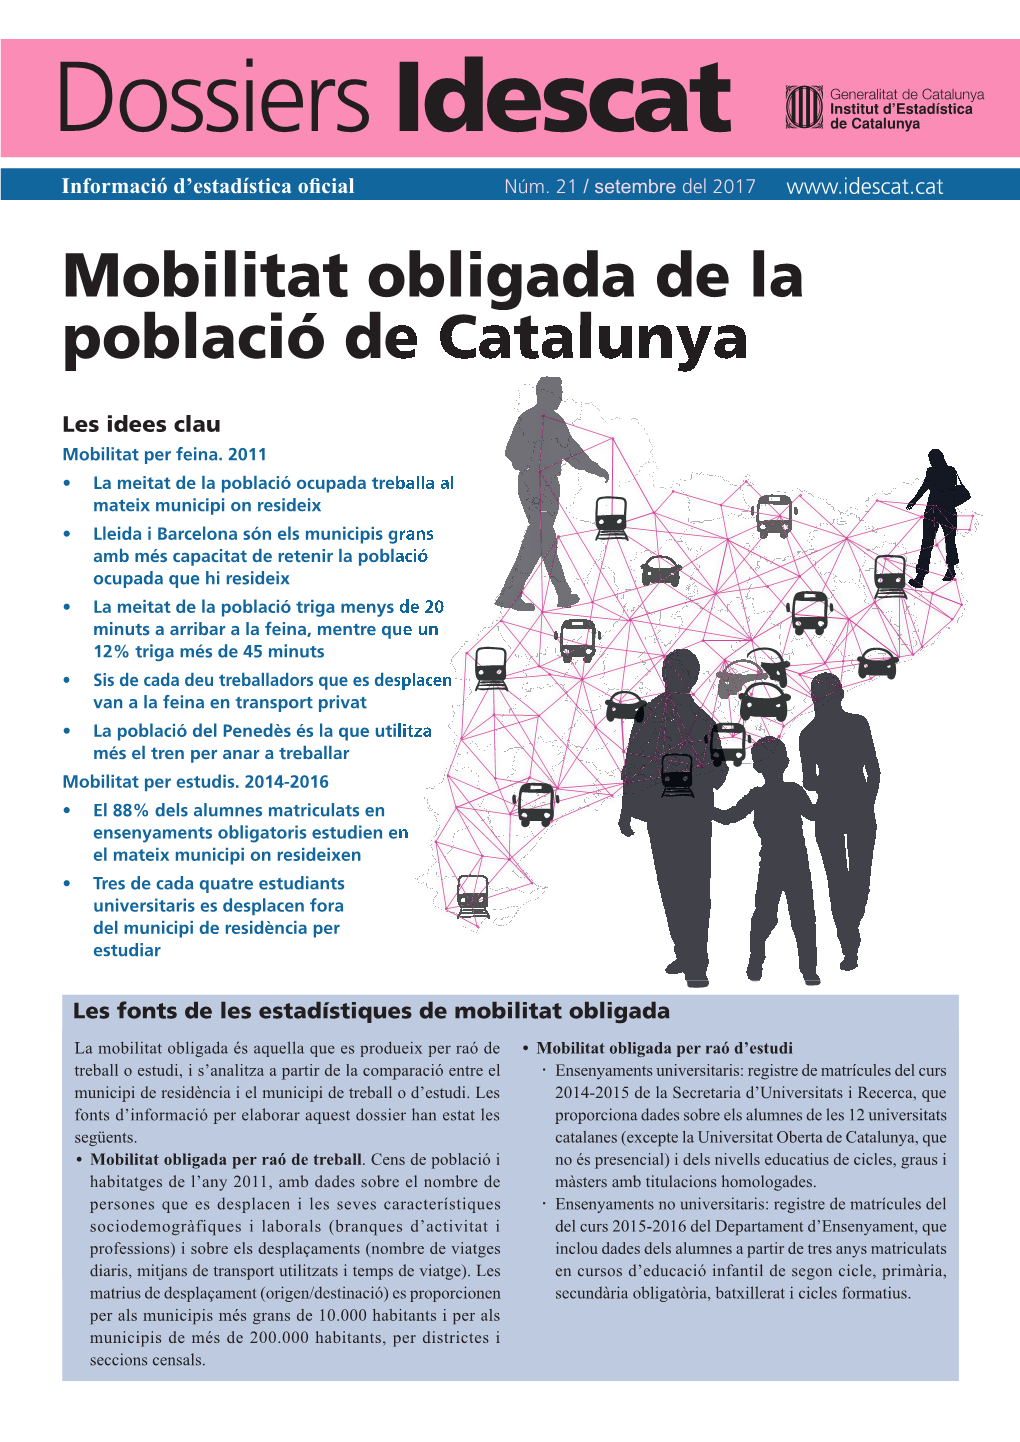 Mobilitat Obligada De La Població De Catalunya